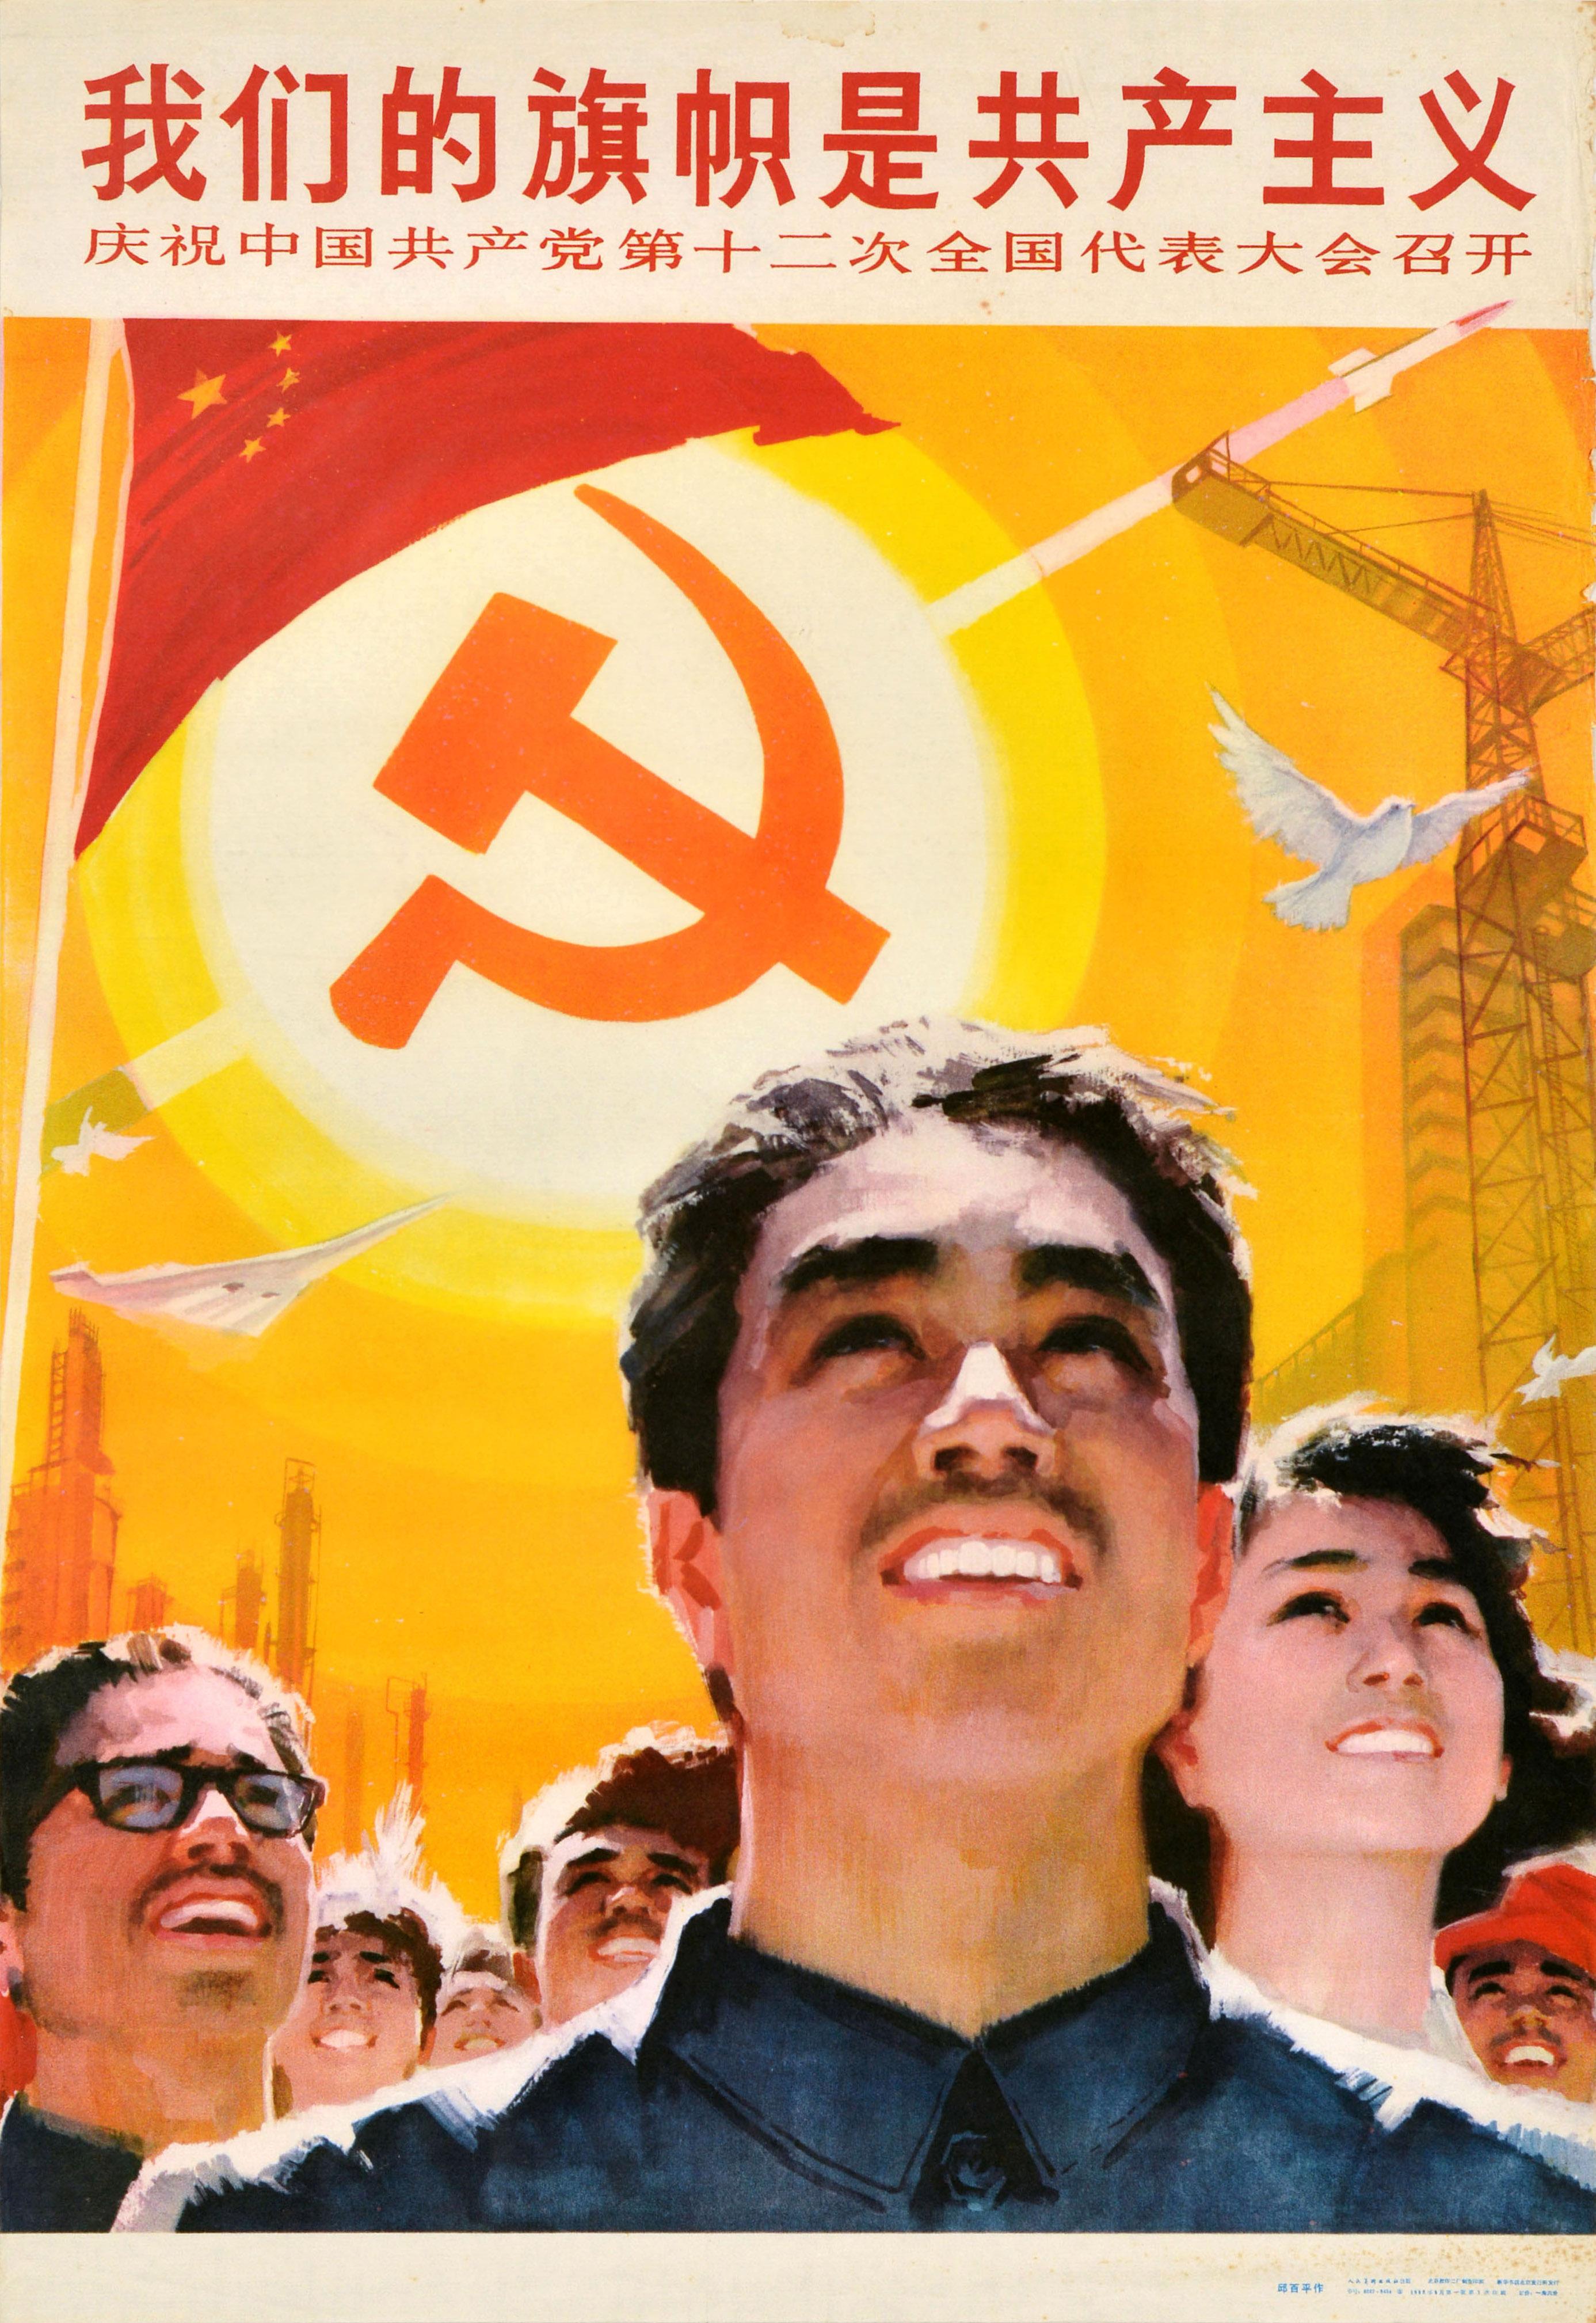 Unknown Print – Originales Original-Vintage- Propagandaplakat der chinesischen Kommunistischen Partei, Unsere Flagge ist Kommunismus